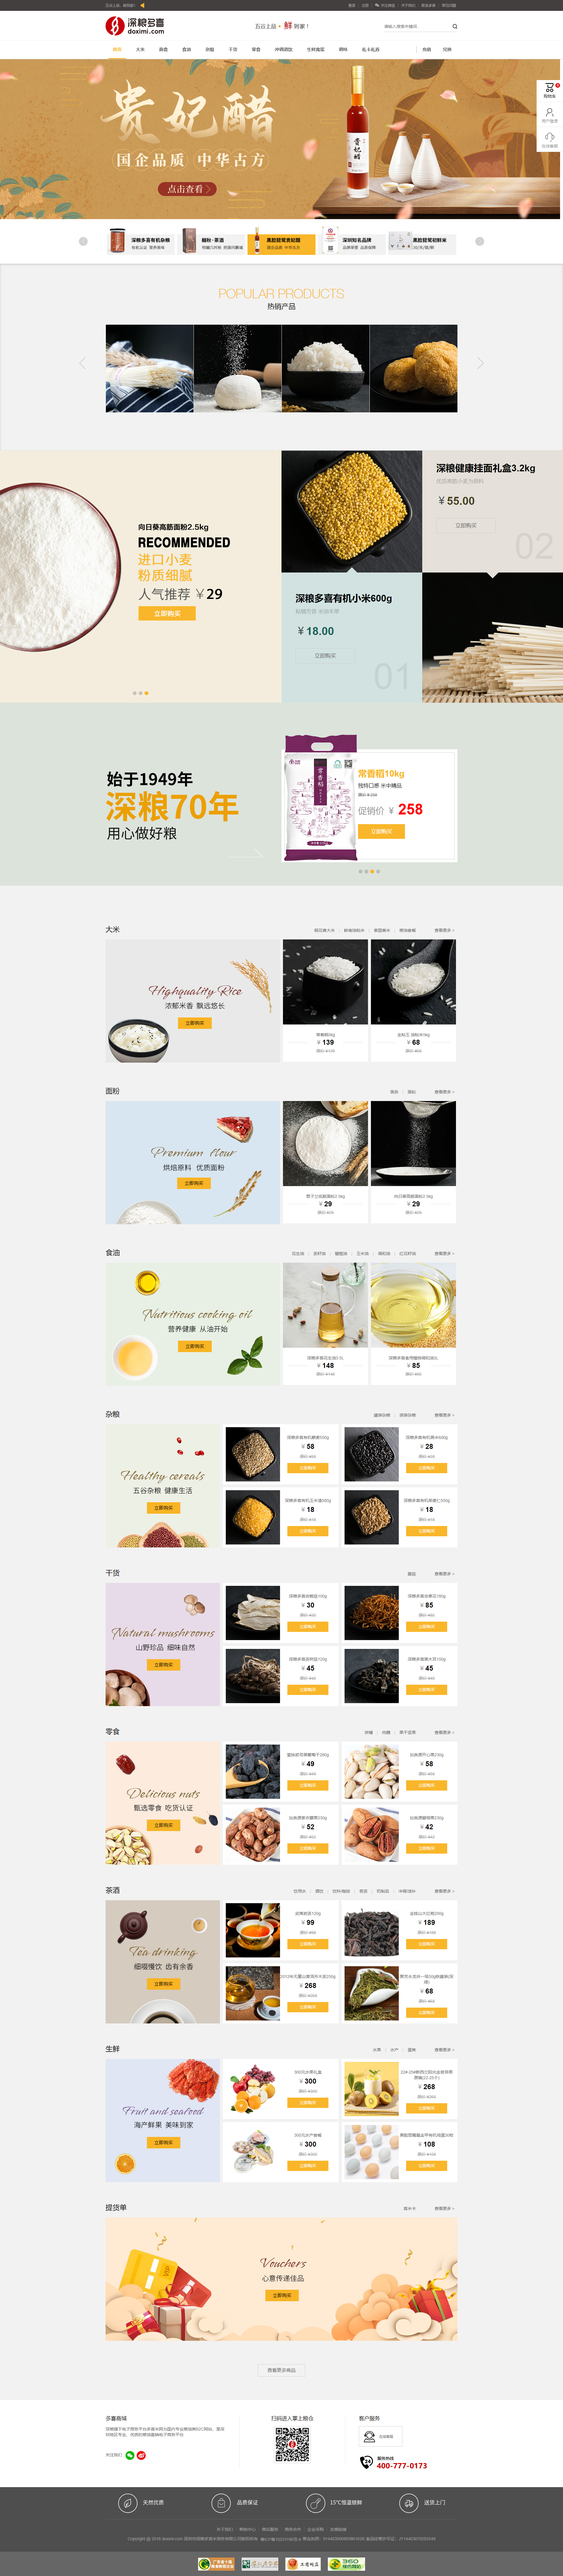 粮食网站设计